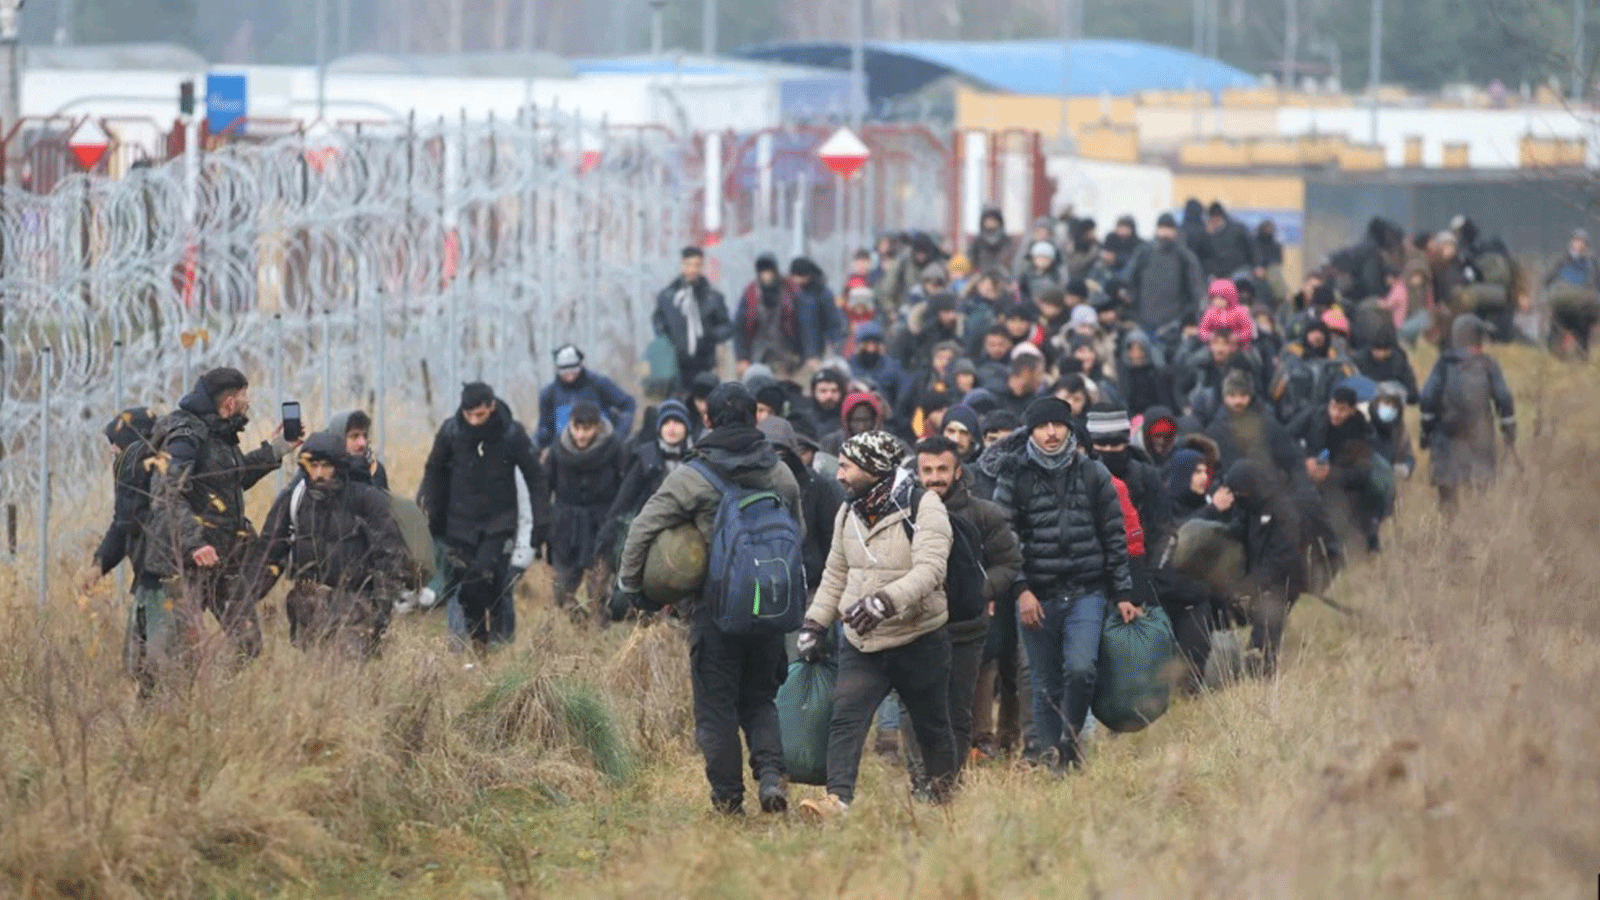 مجموعة من المهاجرين تتحرك على طول الحدود البيلاروسية البولندية نحو معسكر للانضمام إلى أولئك الذين تجمعوا في الحال بهدف دخول بولندا العضو في الاتحاد الأوروبي، في منطقة هرودنا. 12 تشرين الثاني/نوفمبر 2021